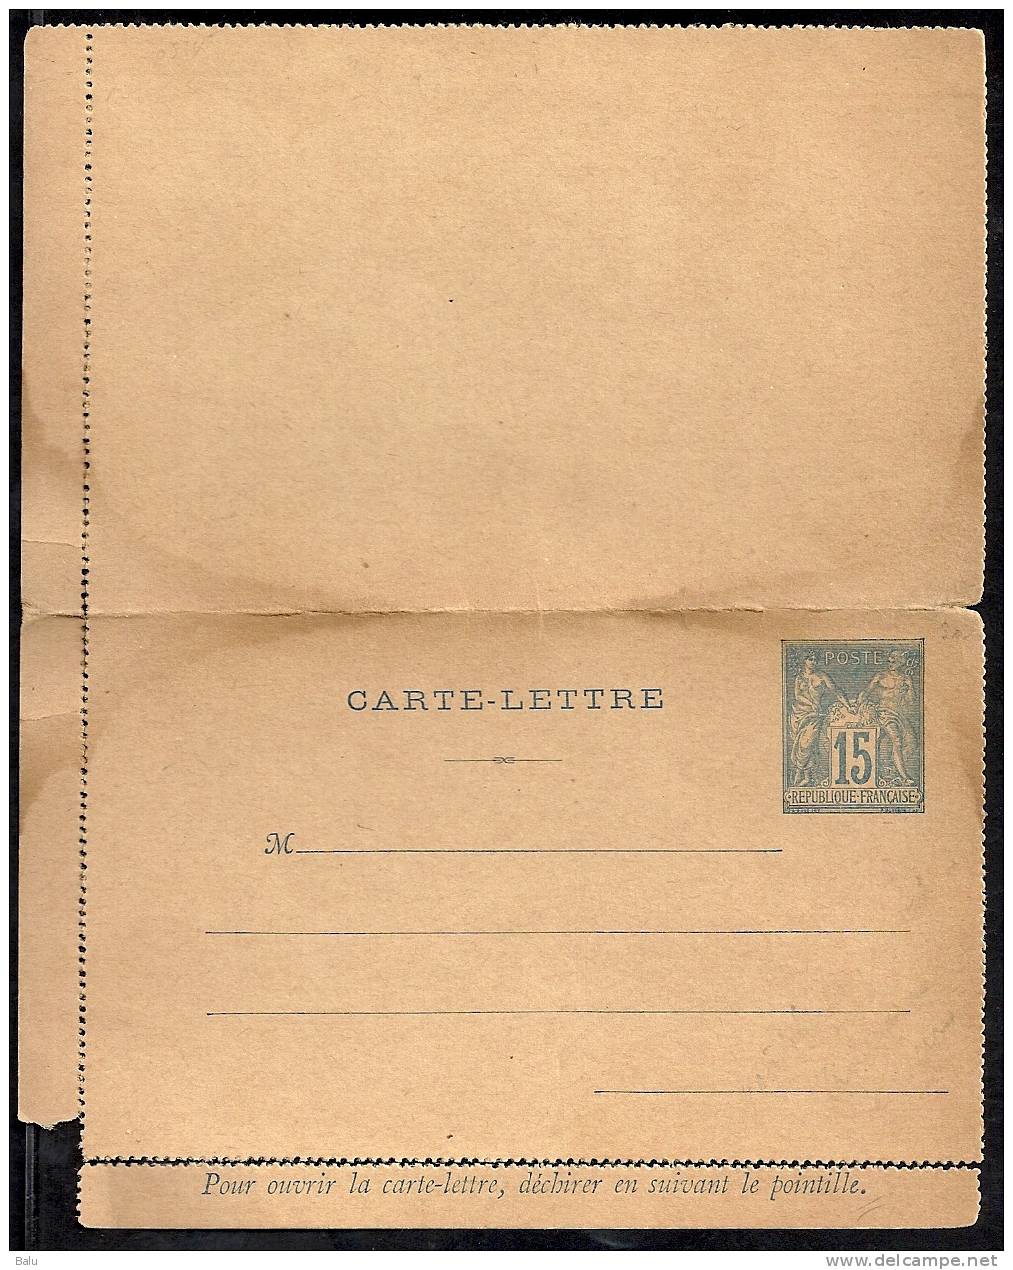 France Entier Postal Yvert No. 90-CL3 Type Sage Piquage A Avec Avis NEUF - Voir Scan - Cartes-lettres